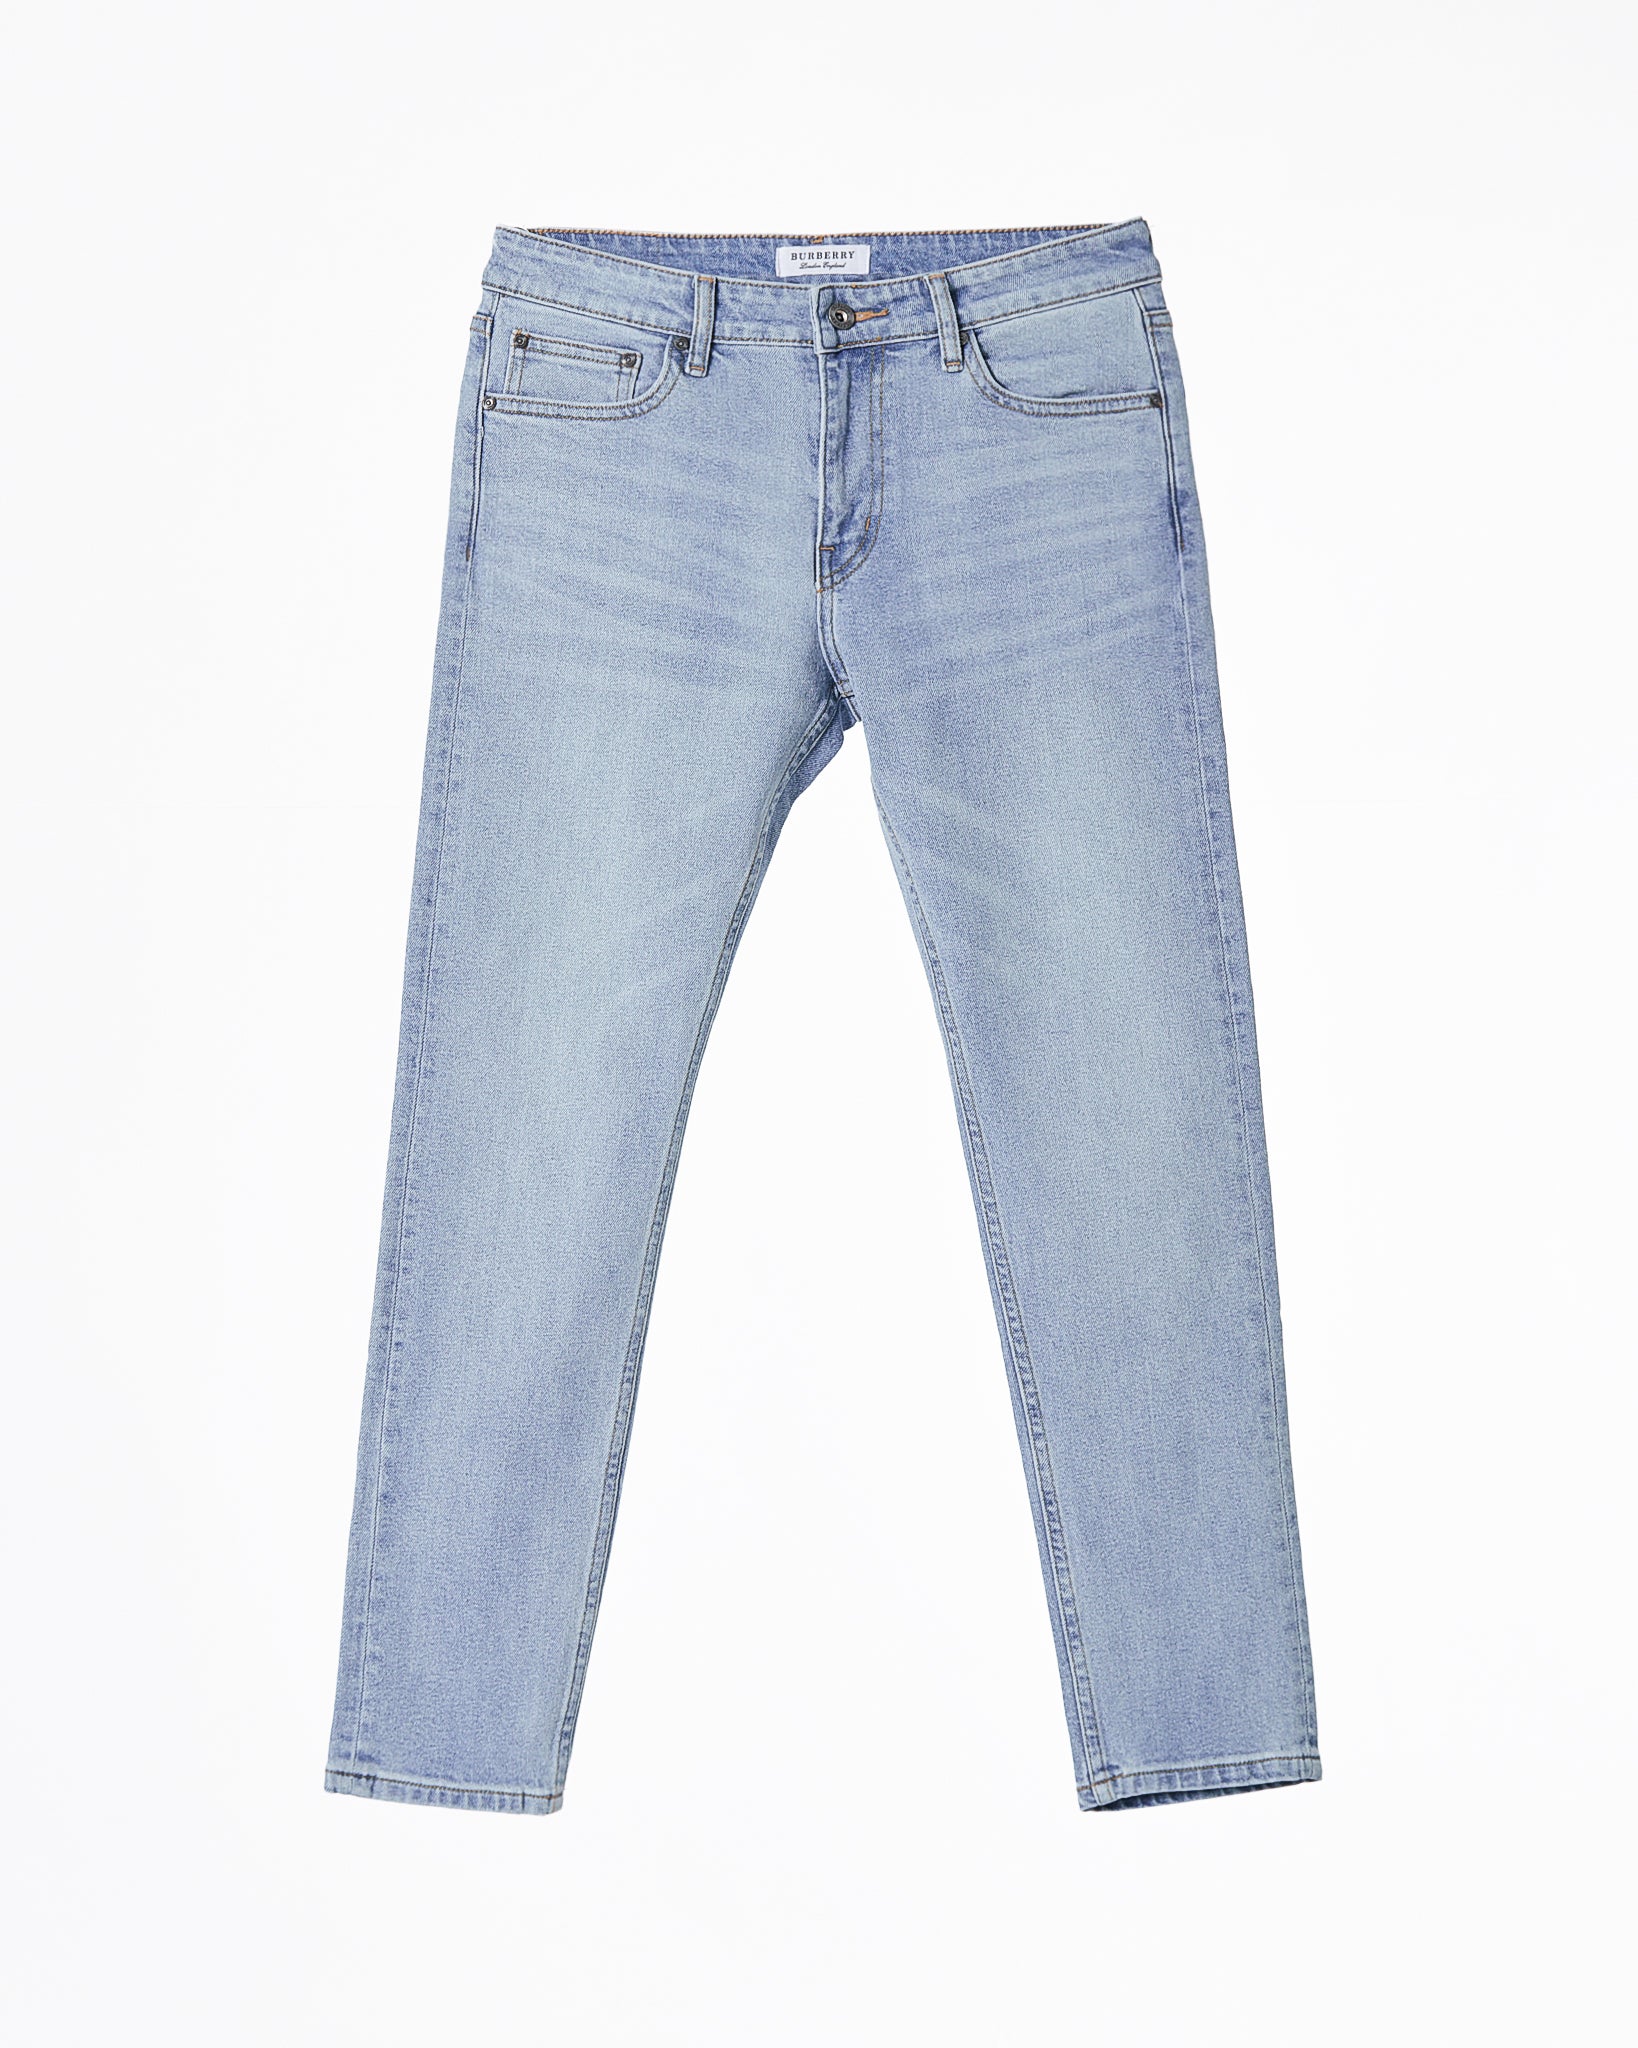 BUR Pocket Embroidered  Men Slim Fit Jeans 24.90